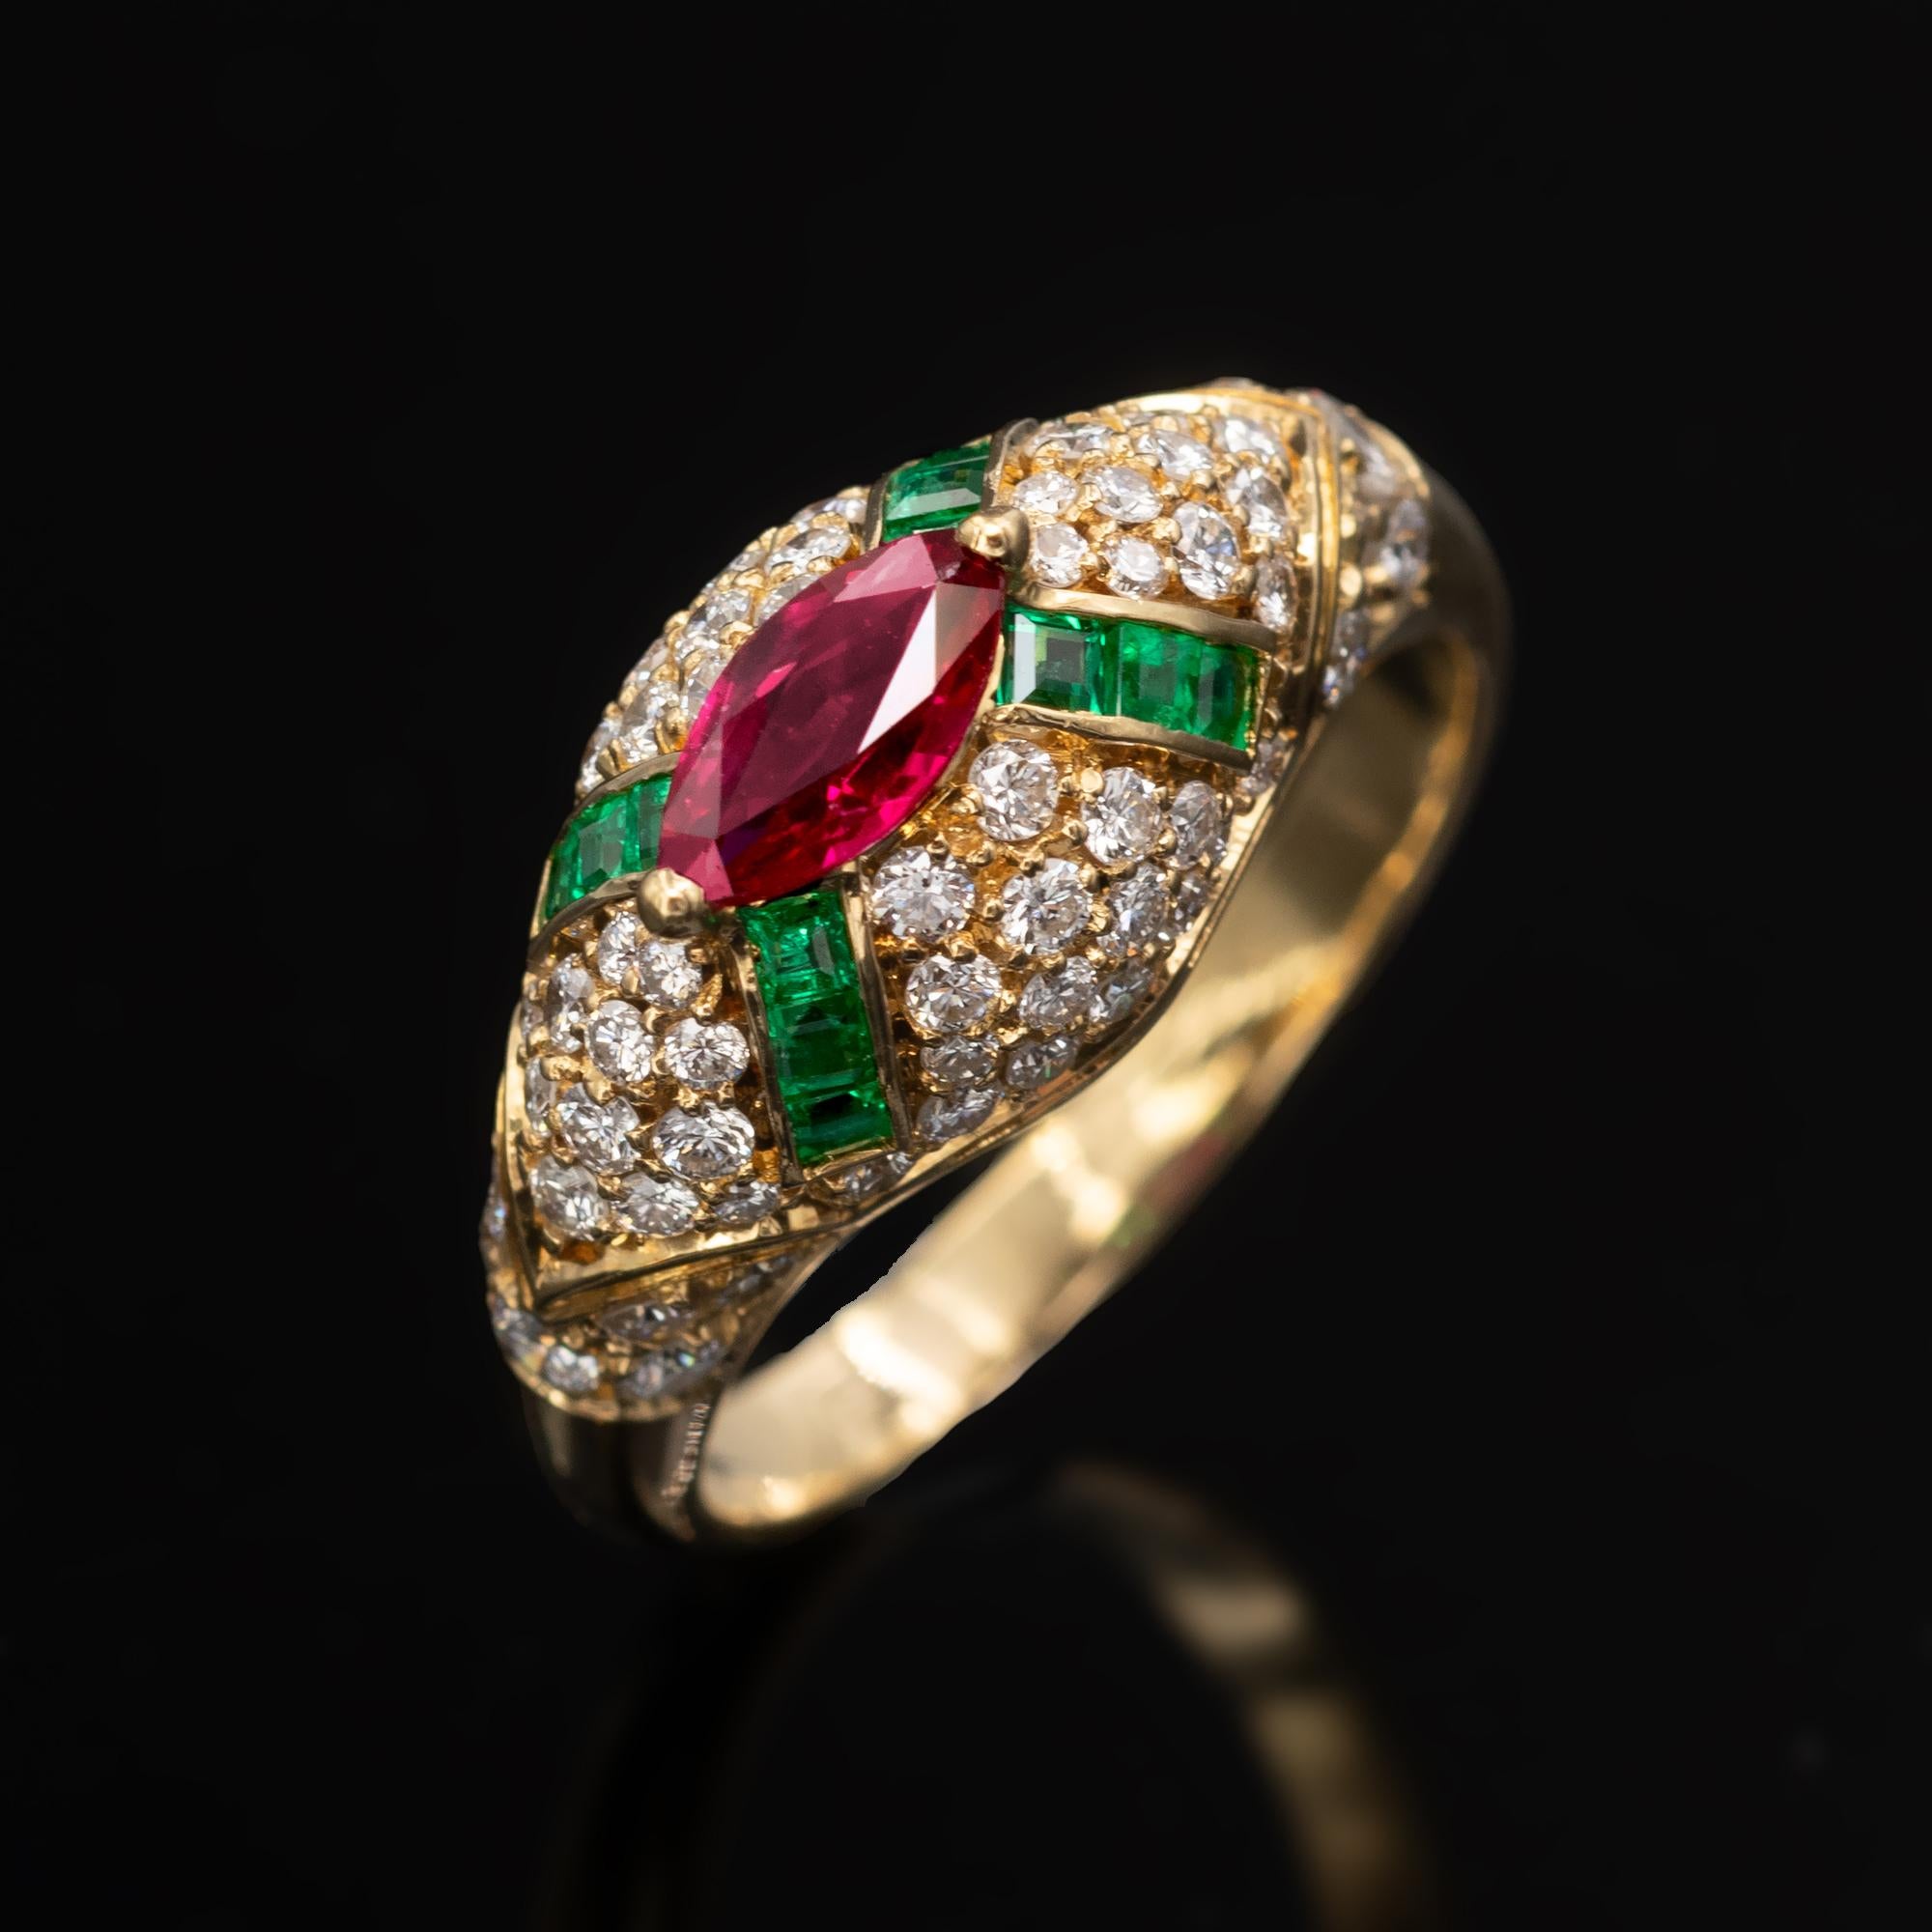 Exquisiter Ring mit kunstvollem Design und Machart. Es handelt sich um einen Kuppelring mit einem leuchtend roten Rubin im Marquise-Schliff in der Mitte, von dem vier Reihen quadratischer Smaragde ausgehen. Der gesamte Ring ist mit Diamanten im